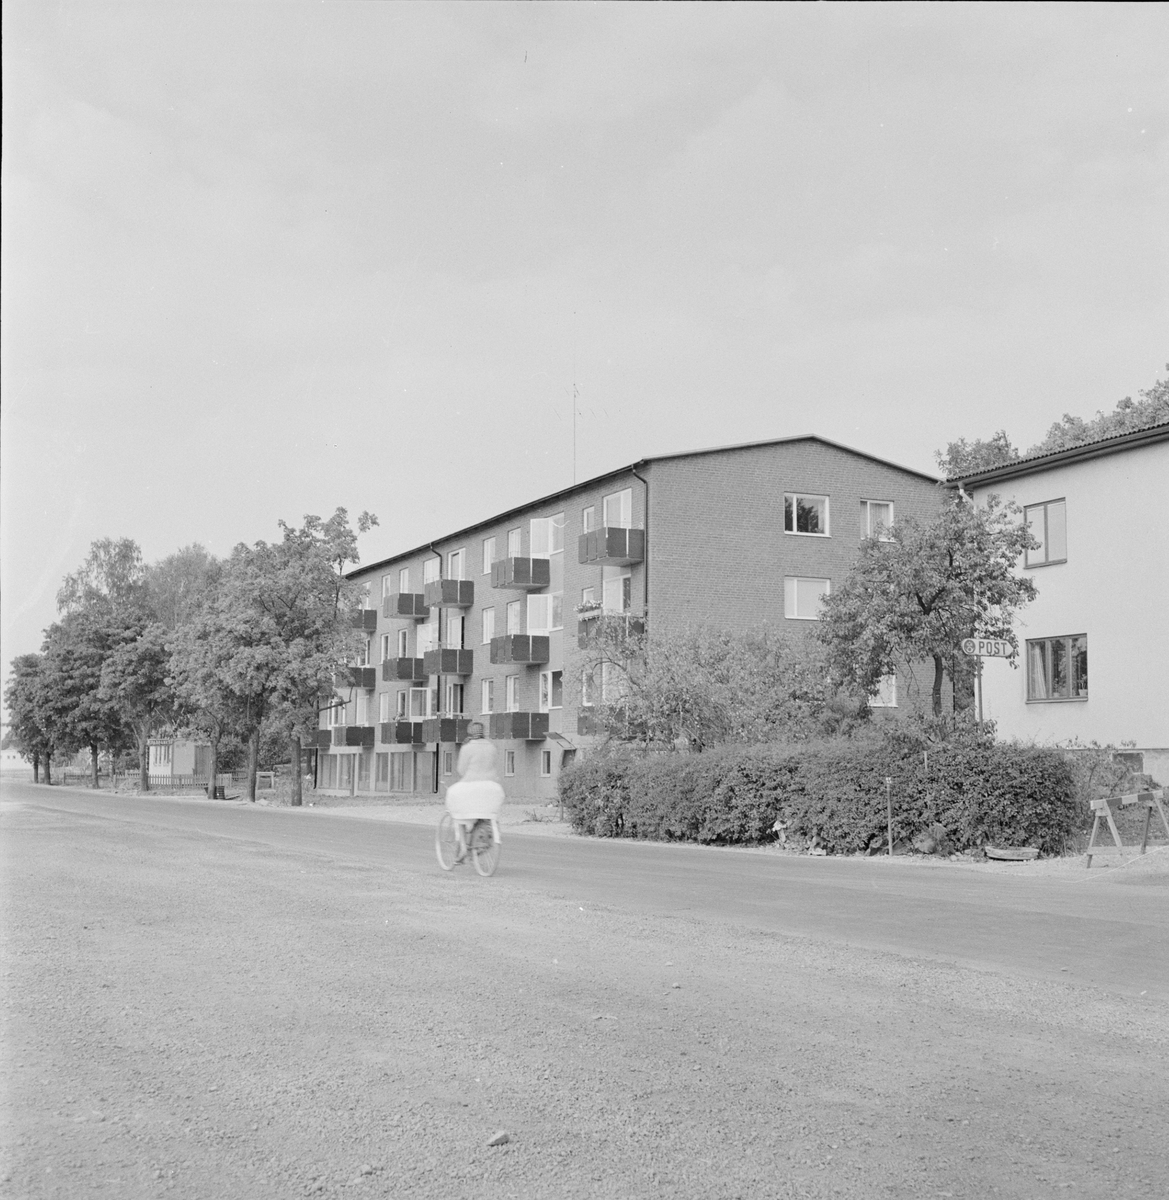 Bostadshus, Bro, Uppland 1959